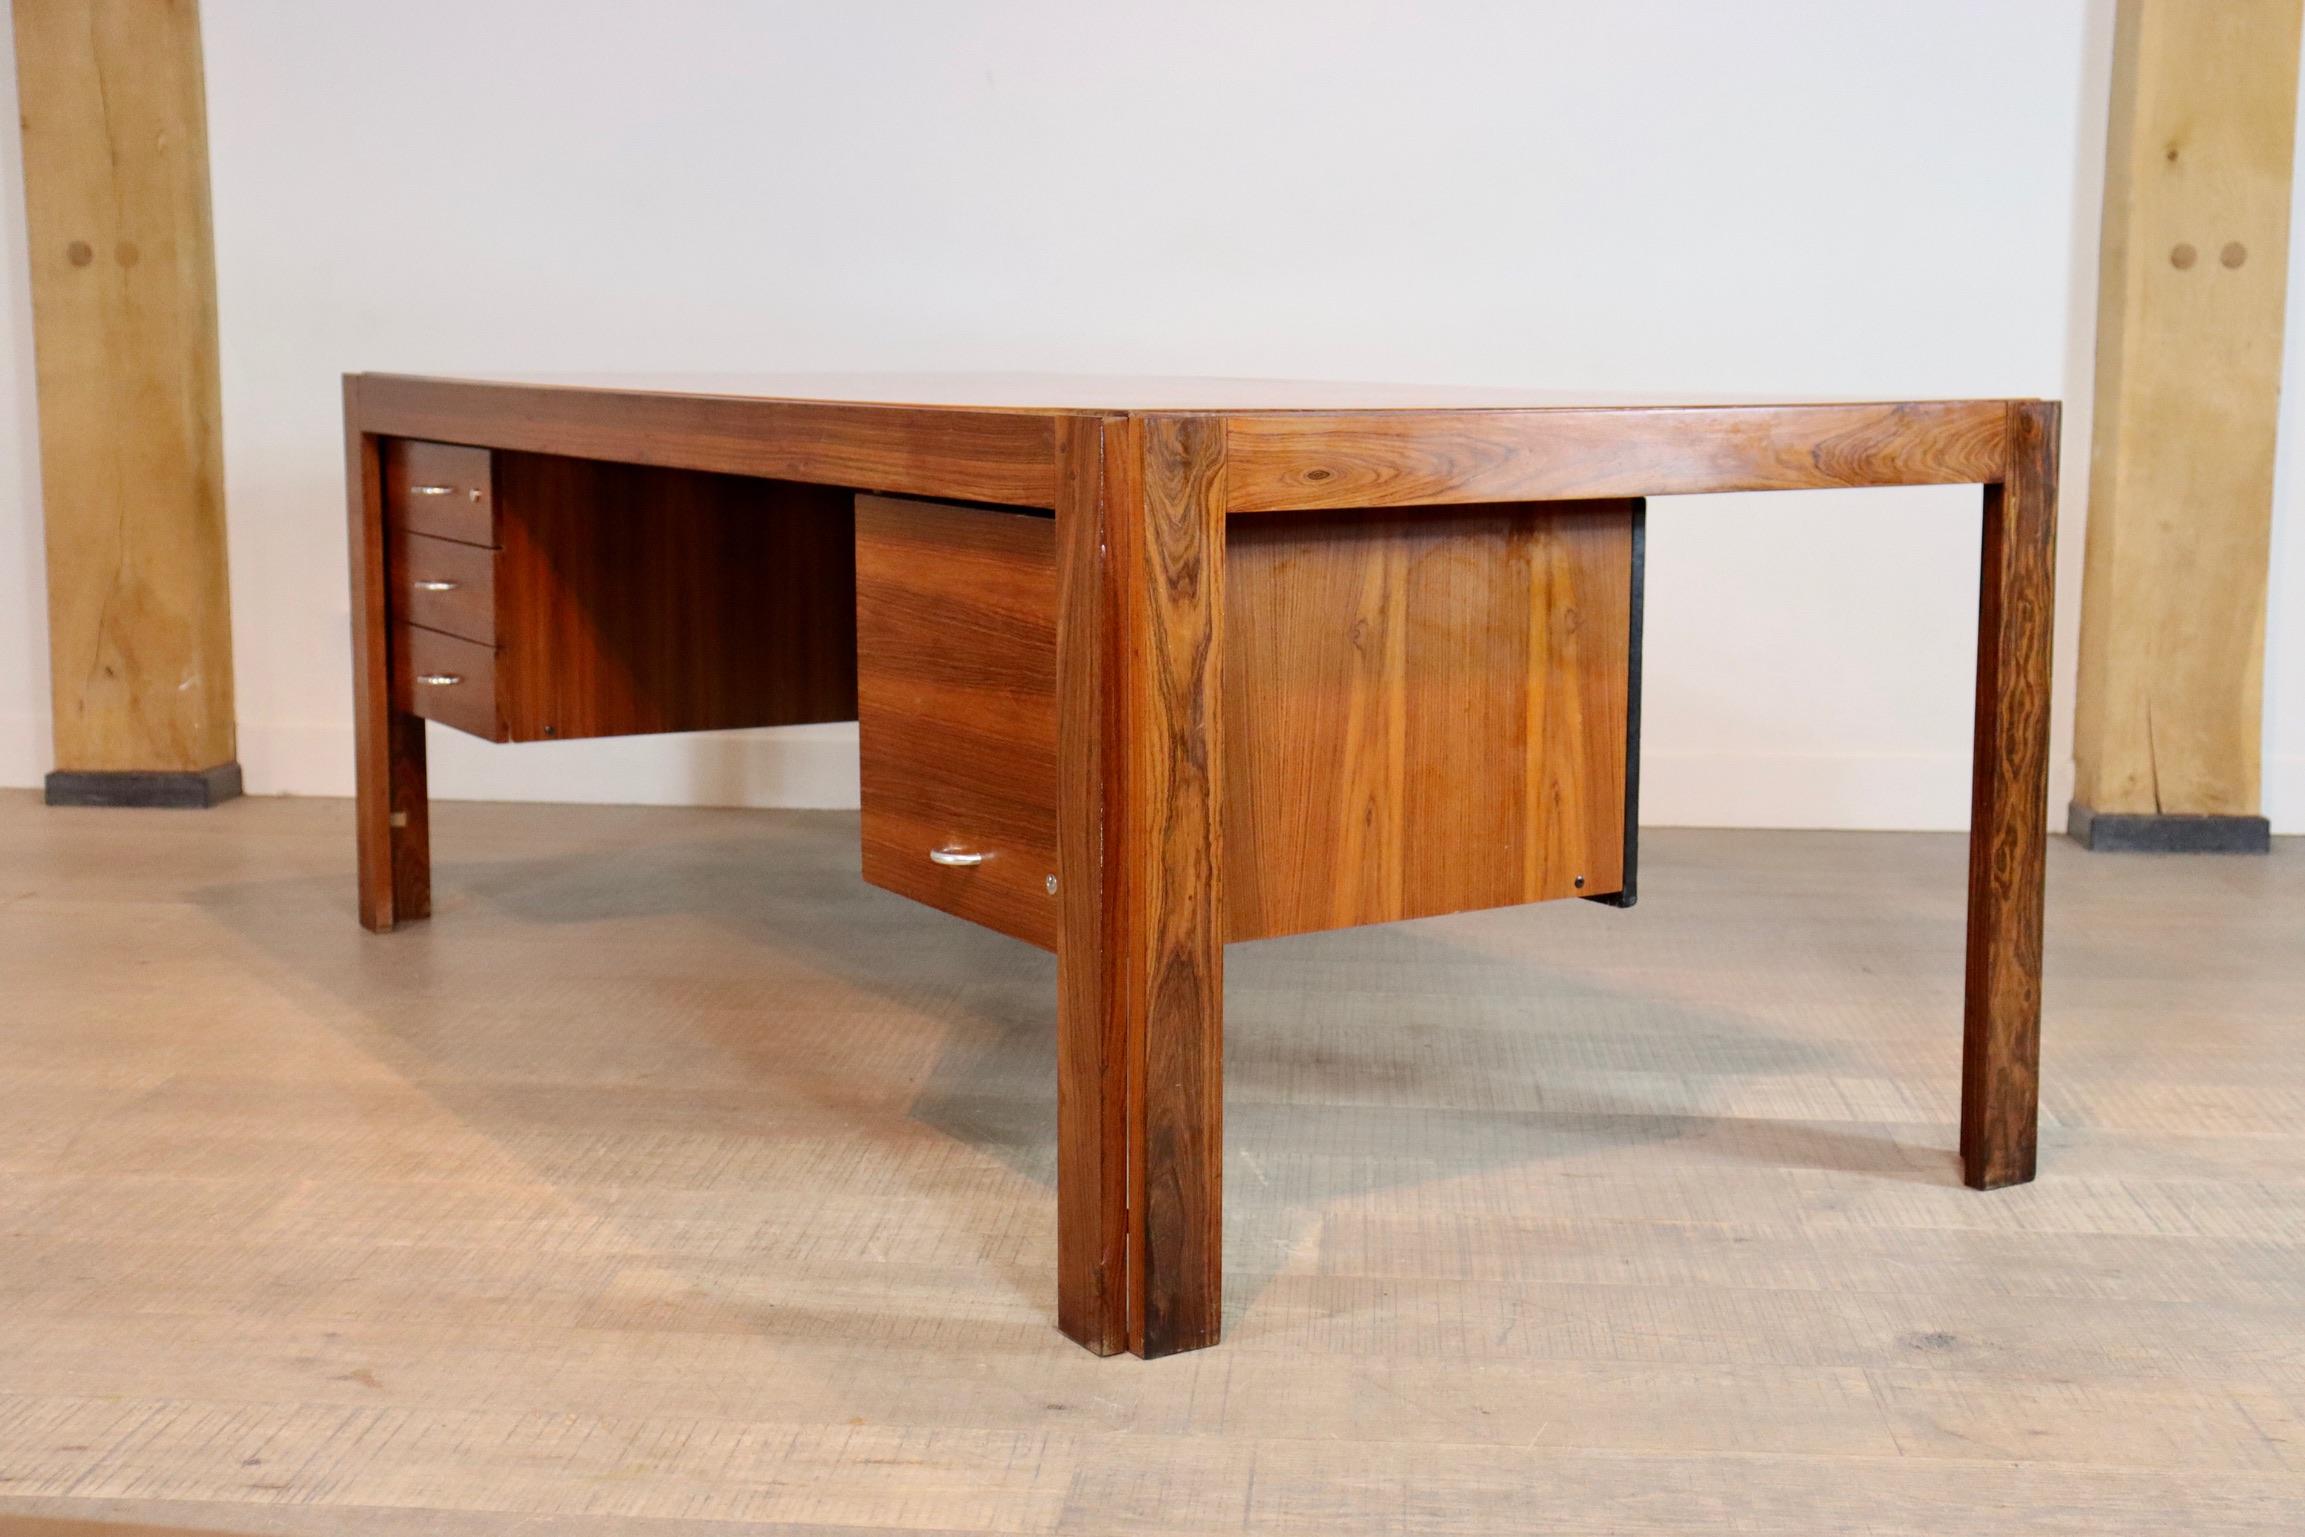 Sehr seltener brasilianischer Schreibtisch aus massivem Palisanderholz Escriba, entworfen von Tora Brazil in den 1970er Jahren. Die Schubladen aus Palisanderholz haben auf der Rückseite eine Lederverkleidung, so dass der Schreibtisch frei im Raum